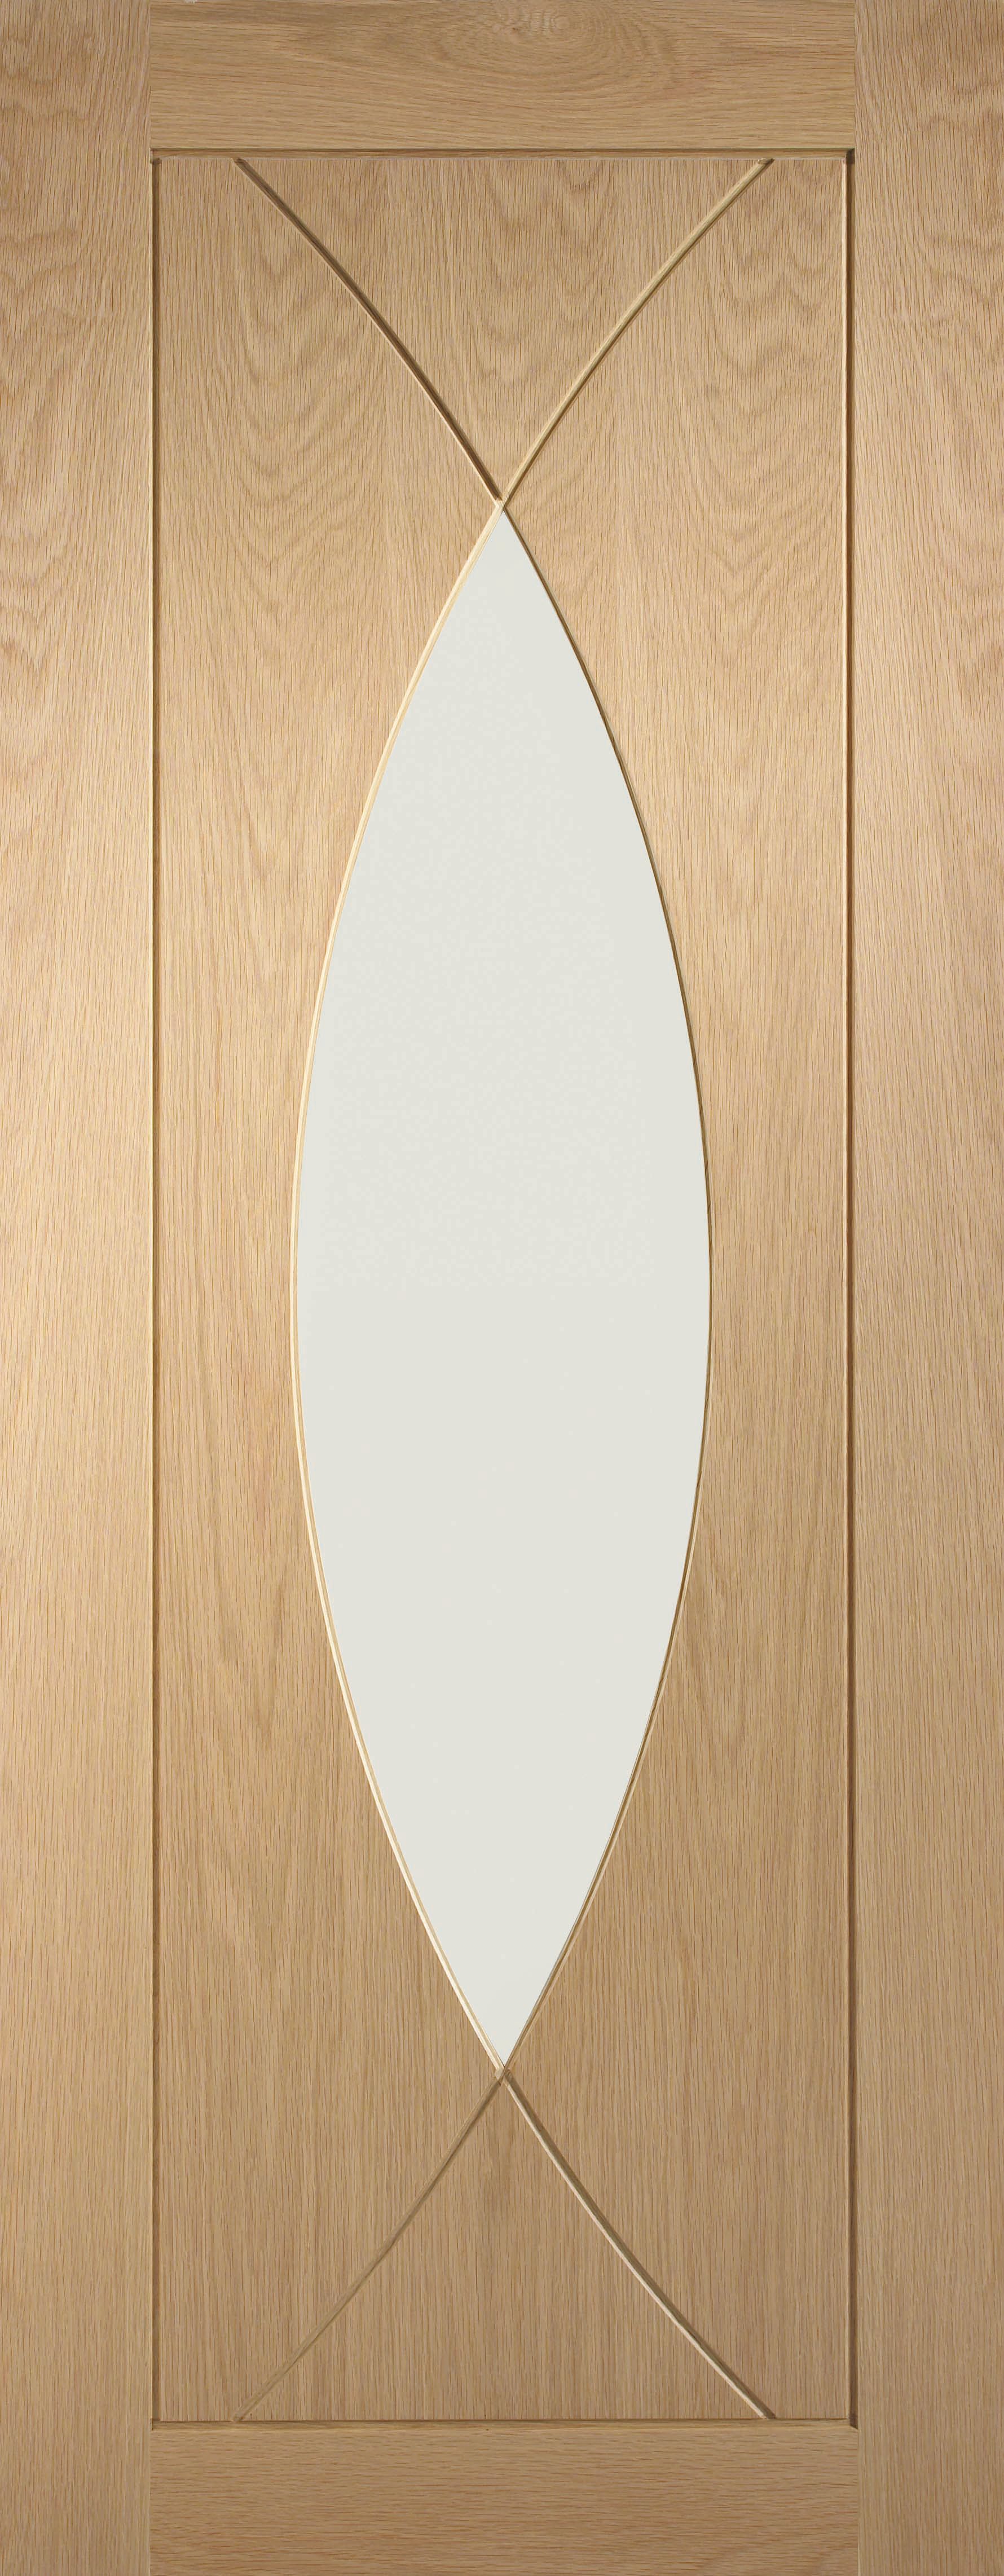 Image of XL Joinery Pesaro Glazed Oak Patterned Internal Door - 1981 x 762mm